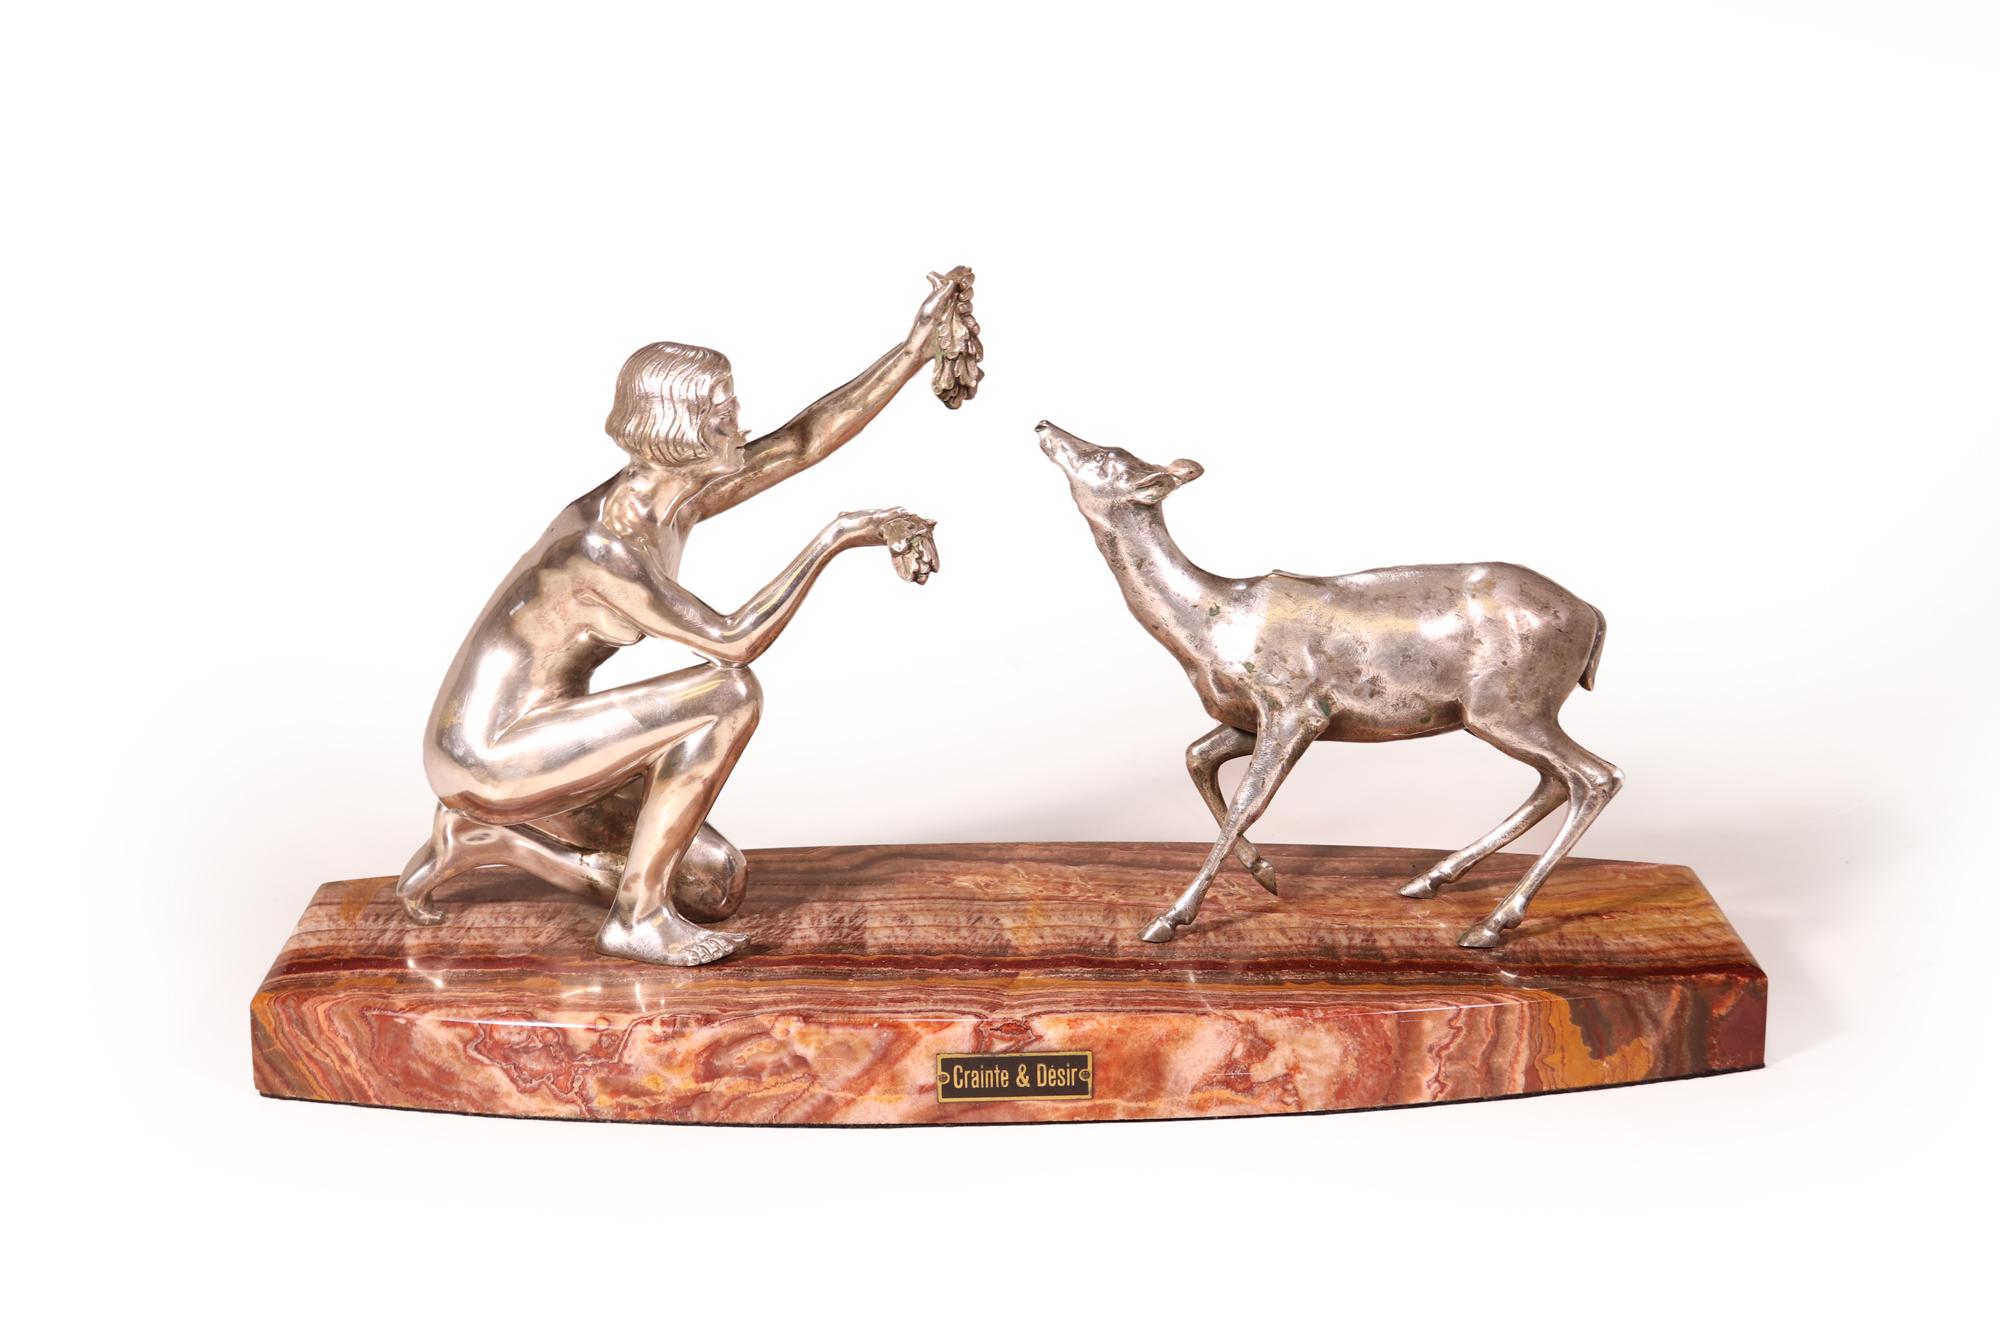 Une étonnante sculpture en bronze argenté d'une dame nourrissant un bébé cerf, produite en France par D,Arte, montée sur une superbe base en onyx rouge. Très bon état général, quelques traces d'usure de l'argent, créant une belle patine

Âge :